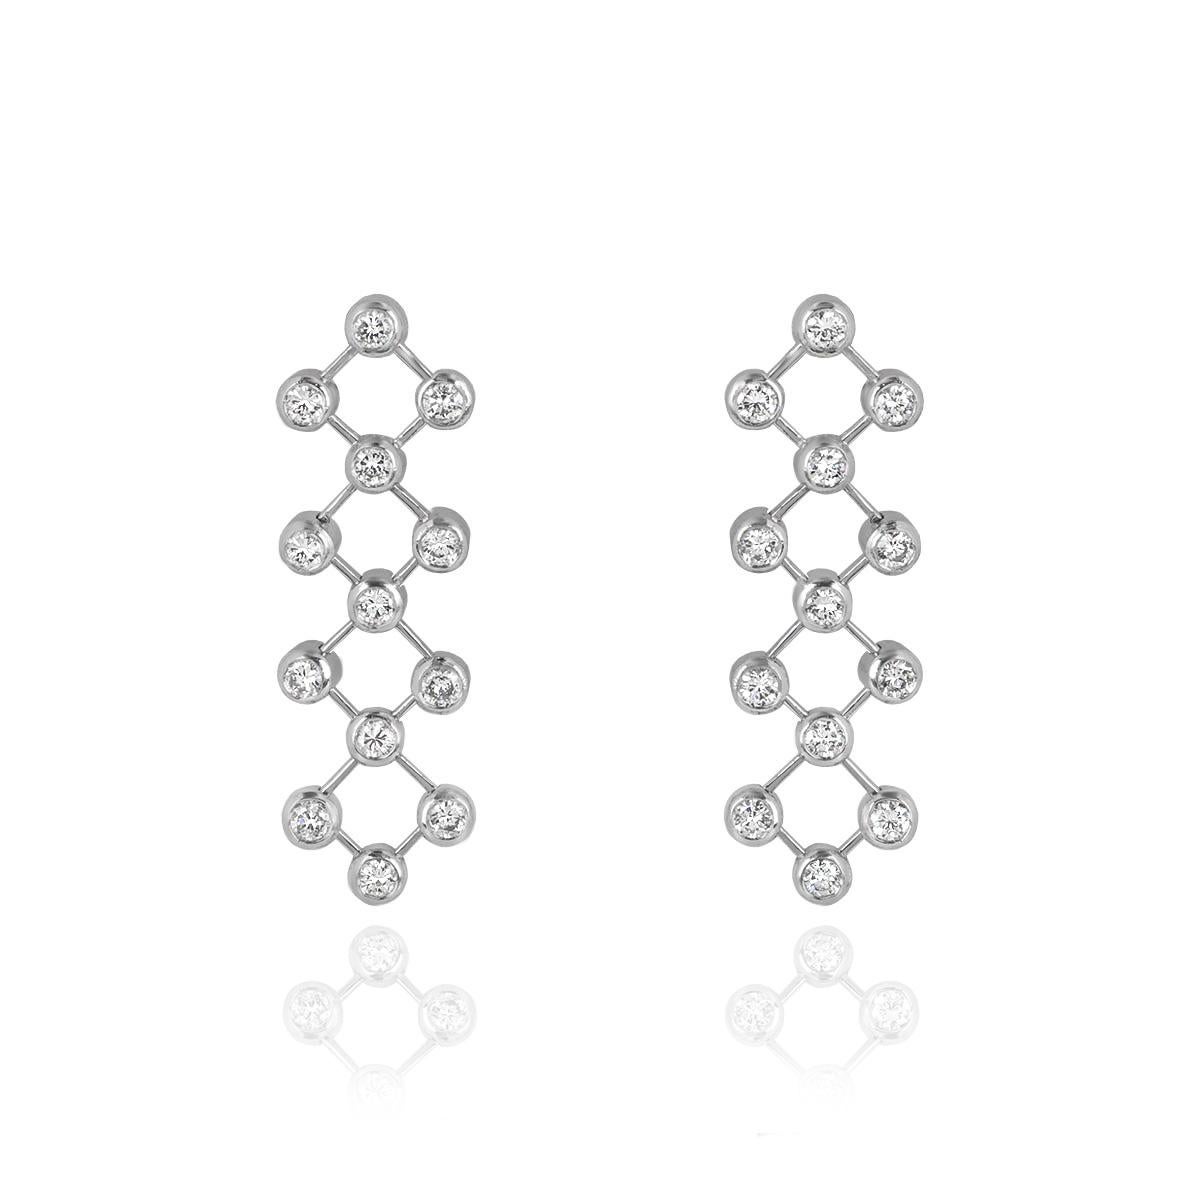 Ein atemberaubendes Paar Platin-Diamant-Tropfenohrringe von Tiffany & Co. Die Ohrringe sind mit runden Diamanten im Brillantschliff in einer Rubover-Fassung besetzt, die durch bewegliche Flexi-Stege miteinander verbunden sind. Die 26 Diamanten haben